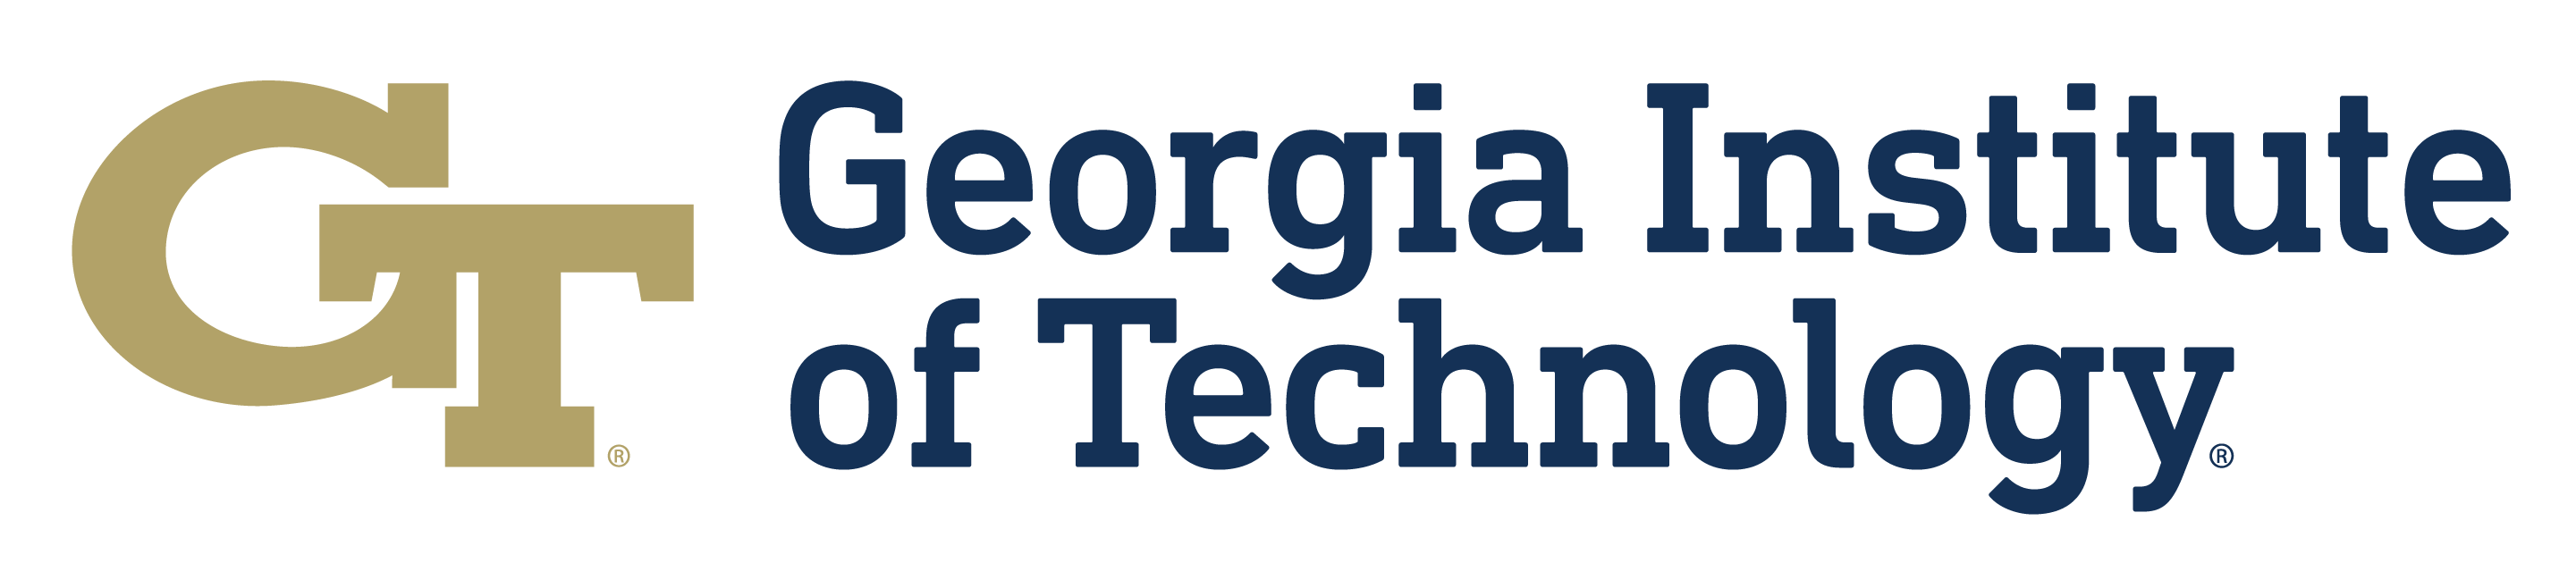 Georgia Tech logo - Extended